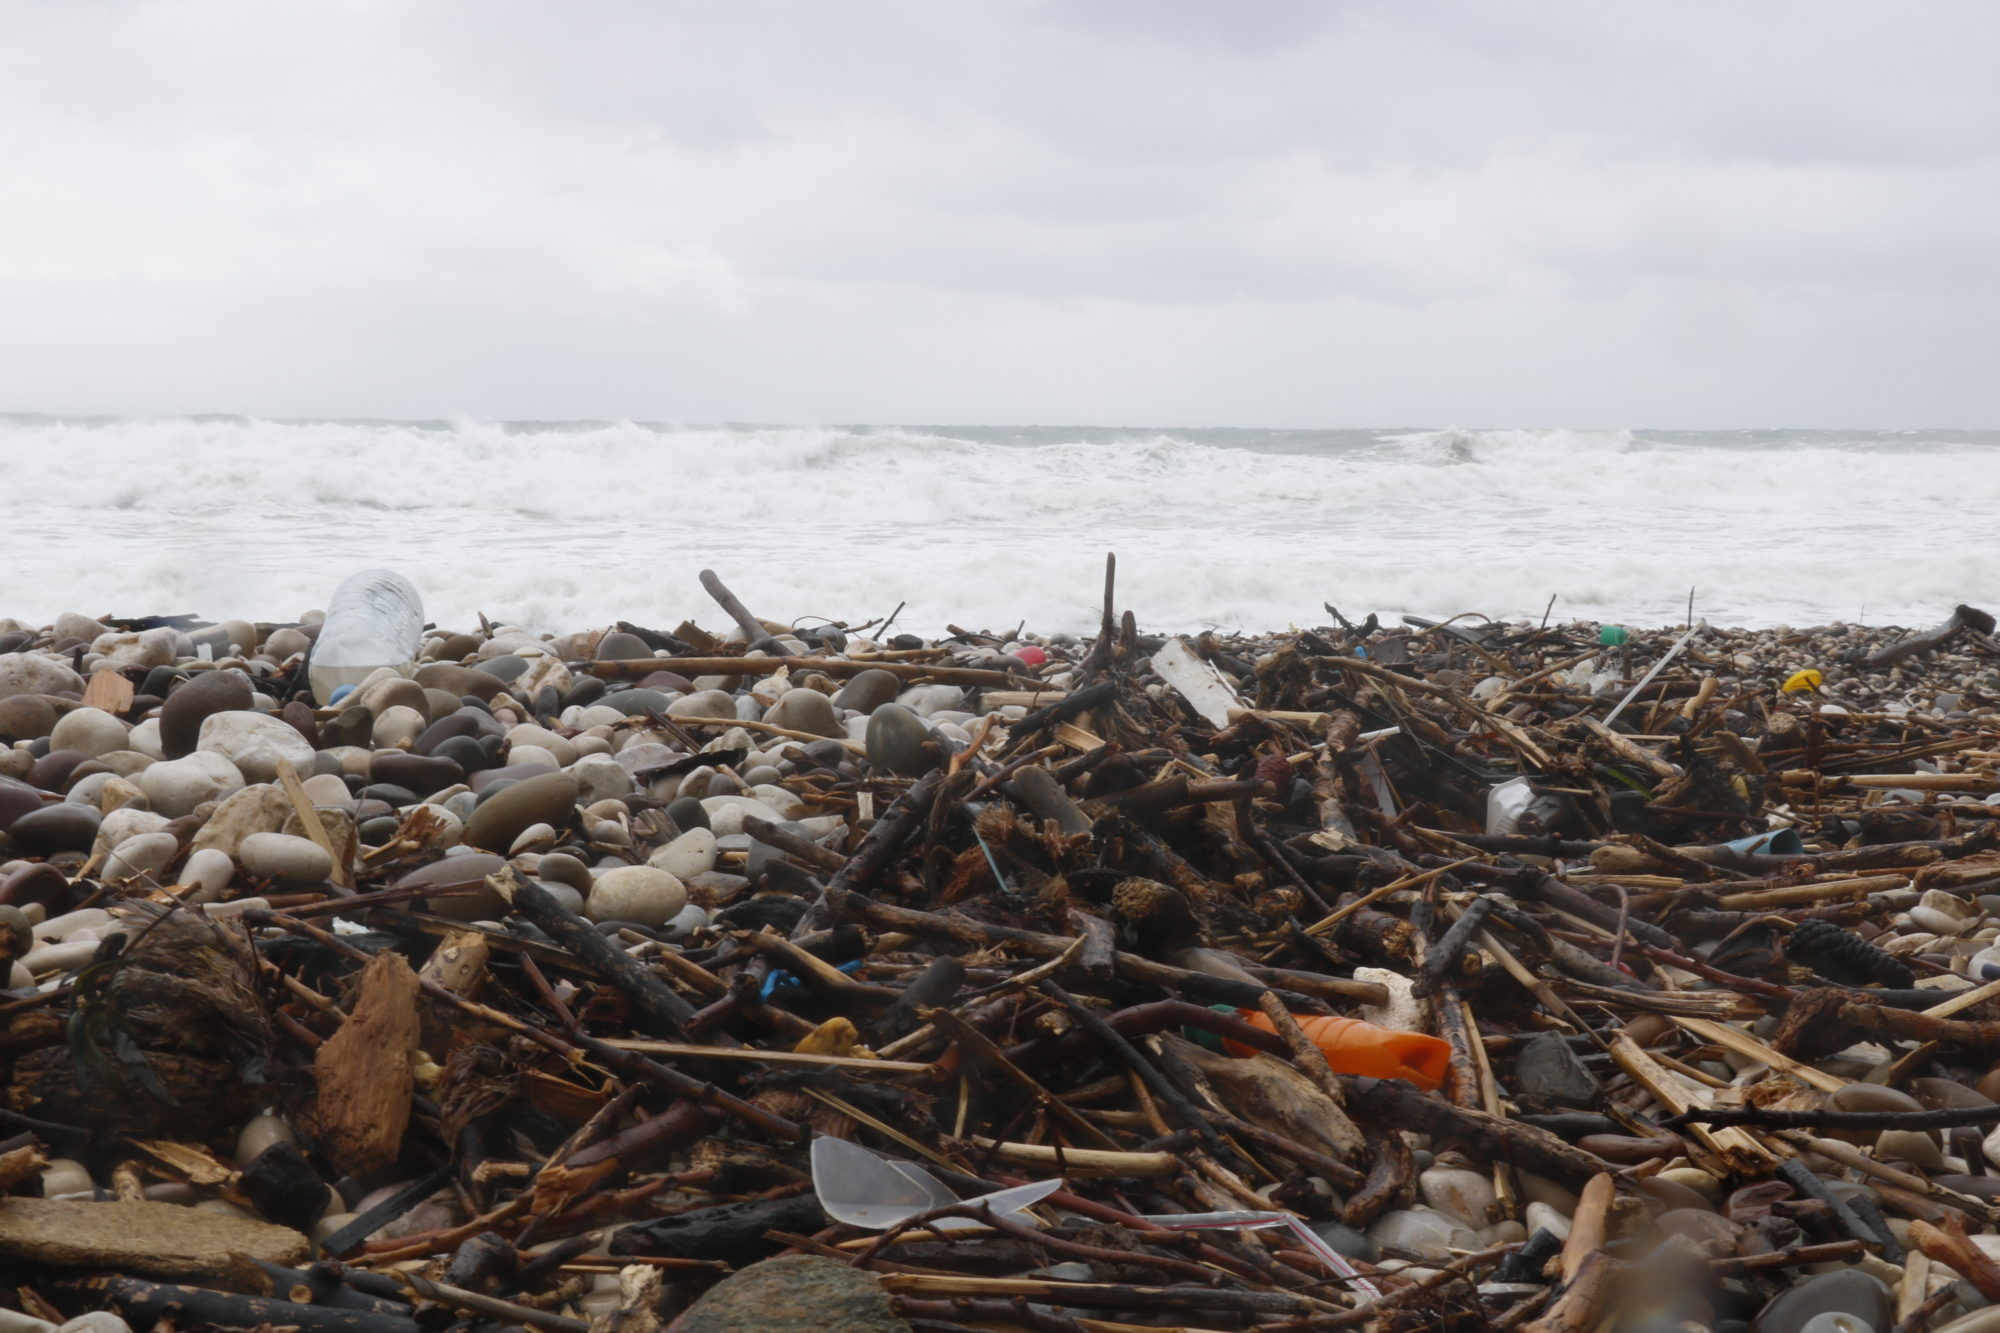 déchets, nettoyage des plages, spot, tempête, surf, surfeur, surfeuse.fr, côte bleue, poubelle